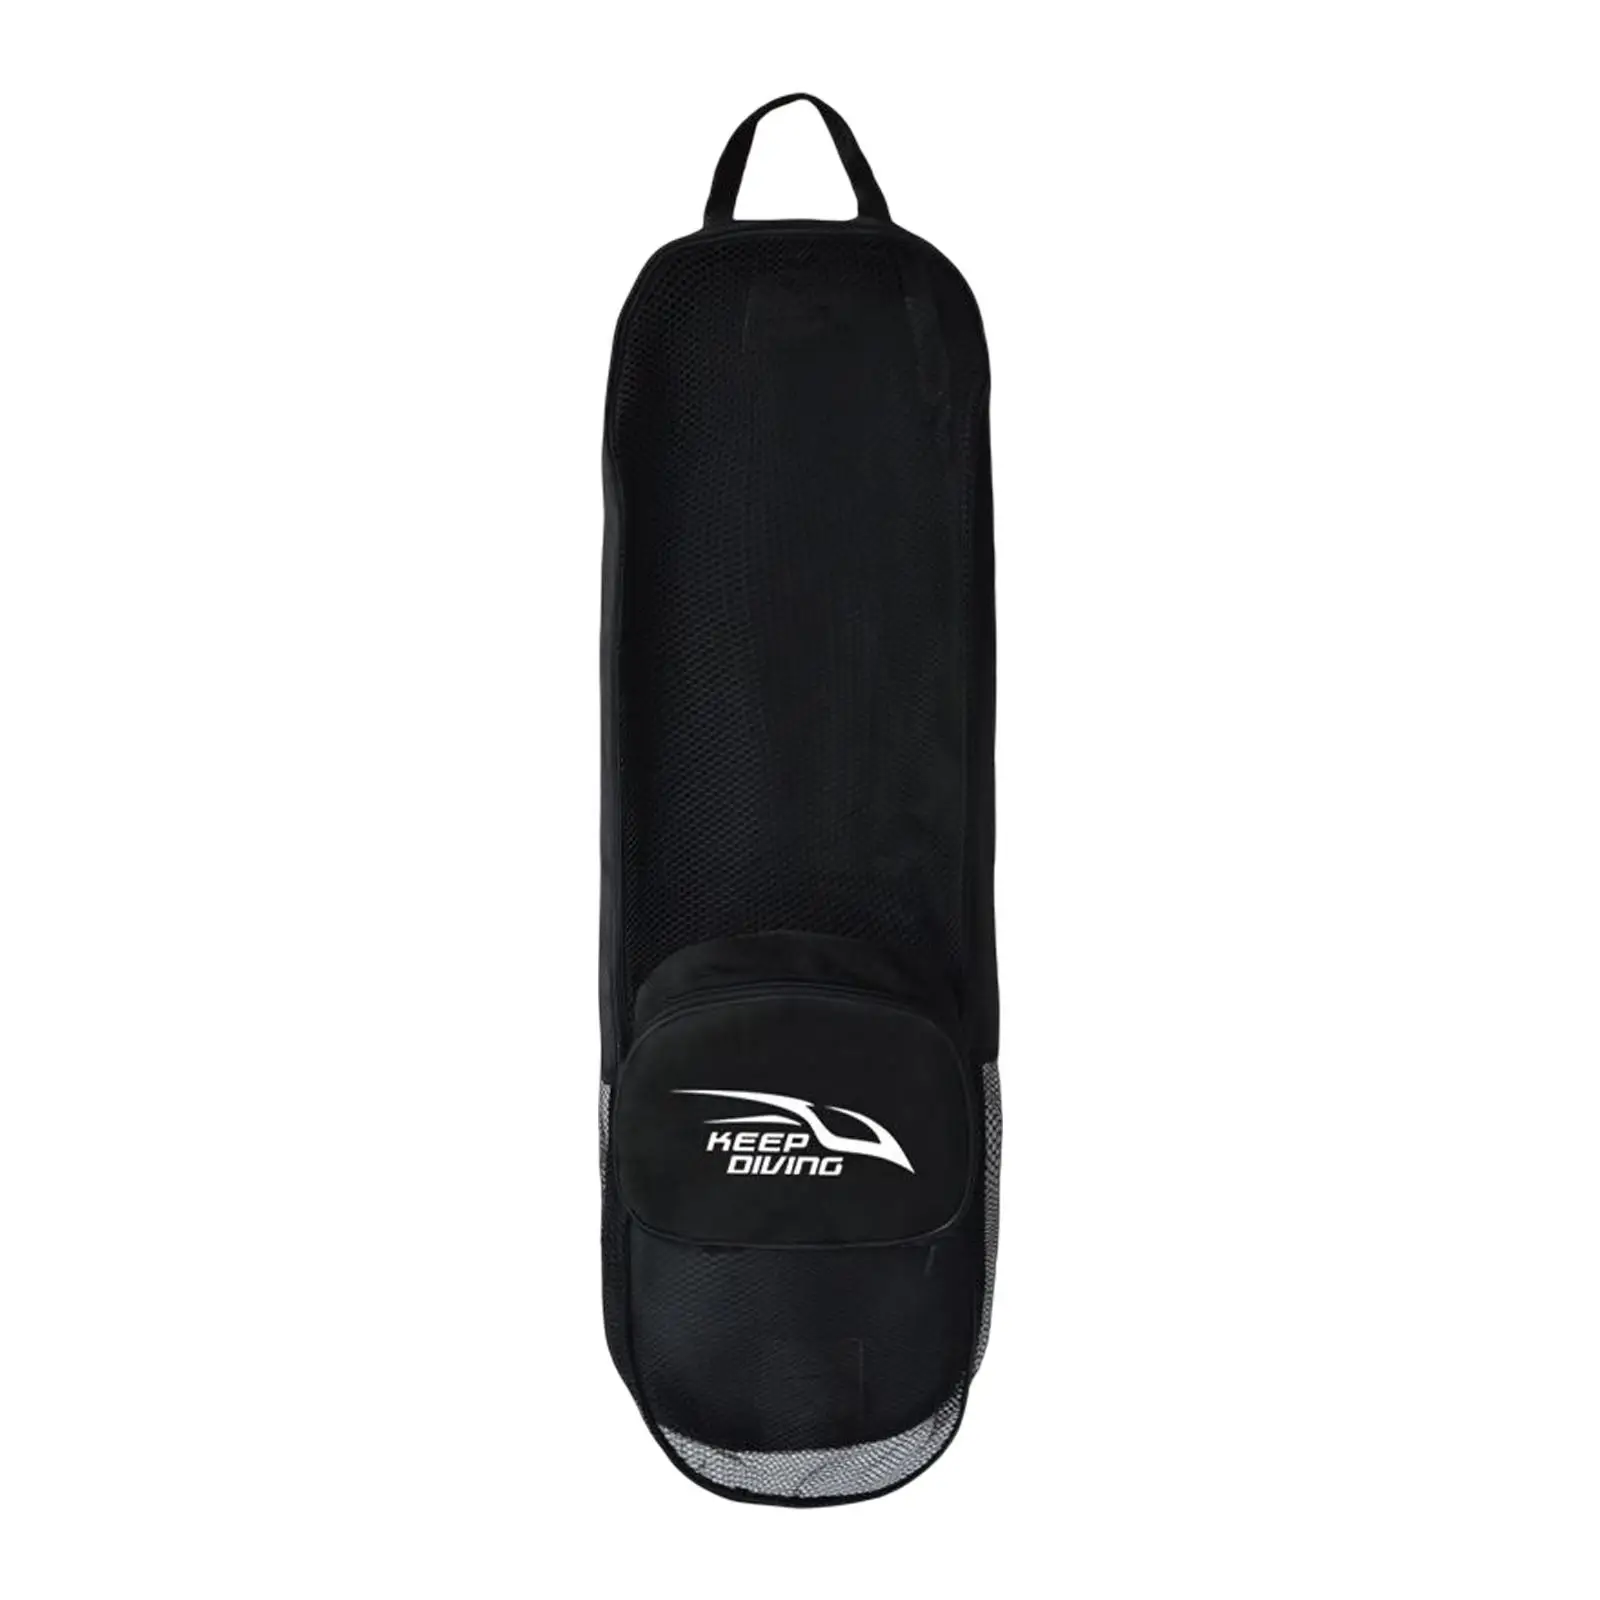 Mesh Snorkeling Gear Bag Adjustable Shoulder Strap Dive Storage Holder Scuba Diving Backpack for Wetsuit Mask Shoes Surfing Swim